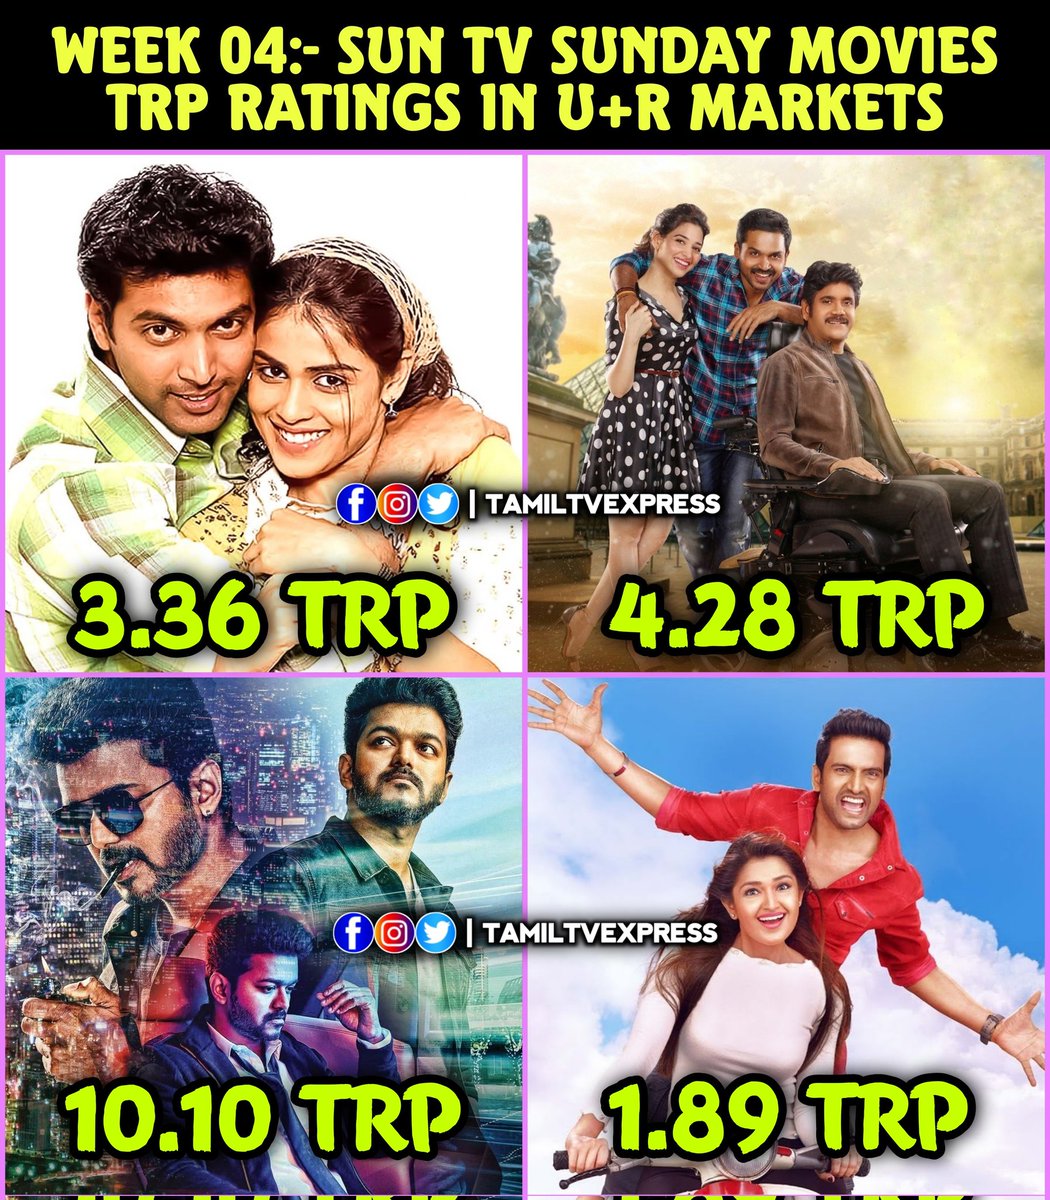 Week 4:- #SunTV Sunday Movies TRP Ratings In U+R Markets 

#SanthoshSubramaniyam -- 3.36
#Thozha -- 4.28 
#Sarkar -- 10.10
#A1 -- 1.89

#JayamRavi #Karthi #Nagarjuna #ThalapathyVijay #santhanam #PonniyinSelvan2 #PS2 #Leo #Thalapathy67𓃵